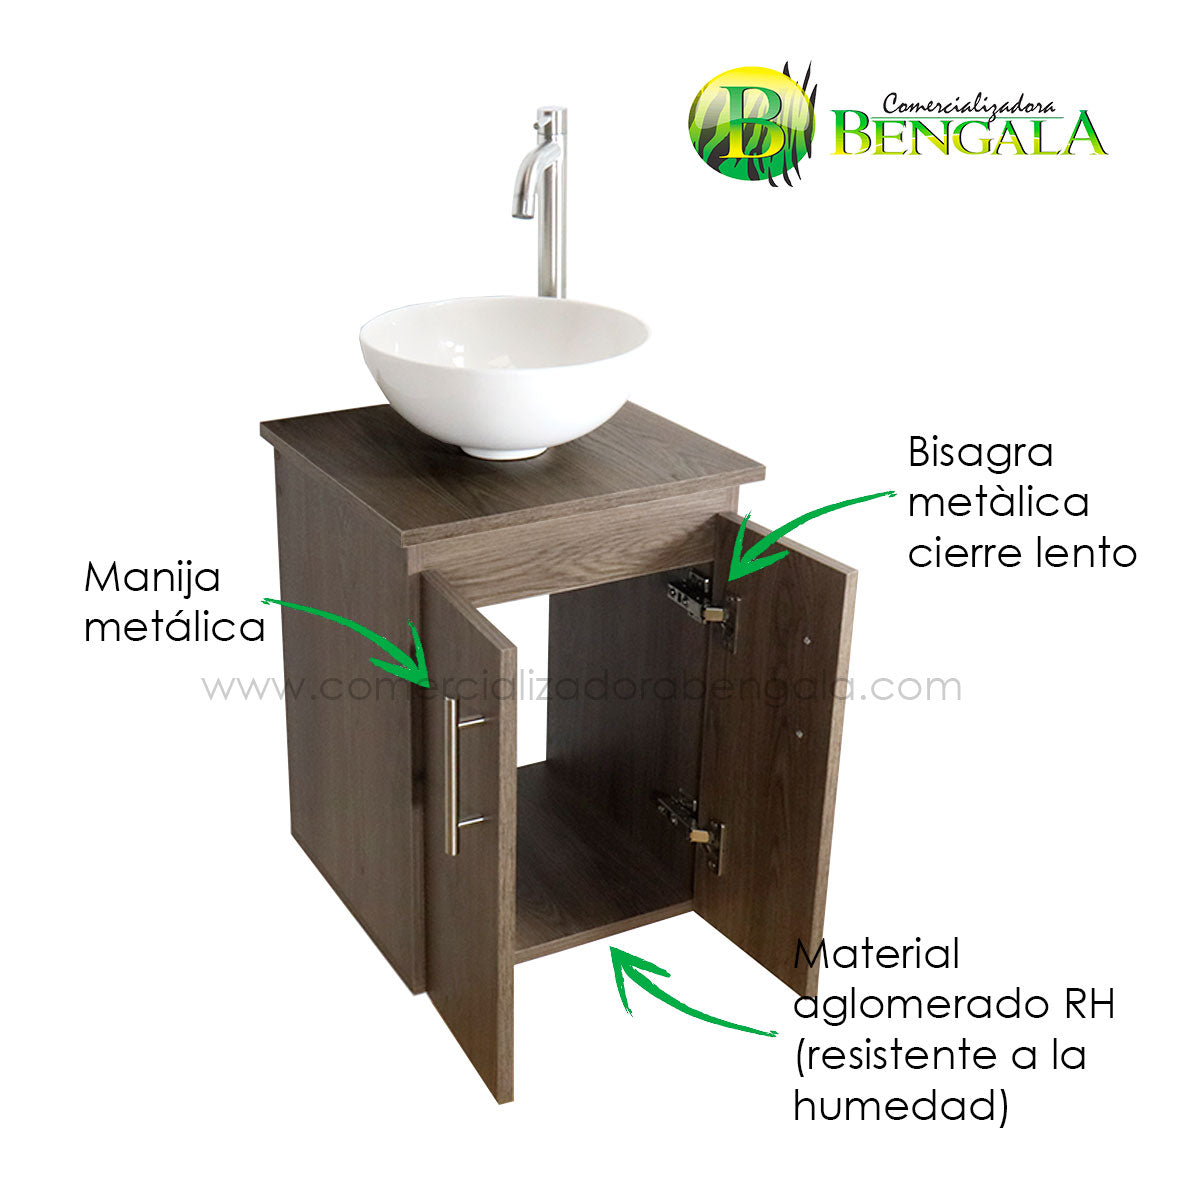 Combo mueble para baño MINI Flotante 38X35 cm – COMERCIALIZADORA